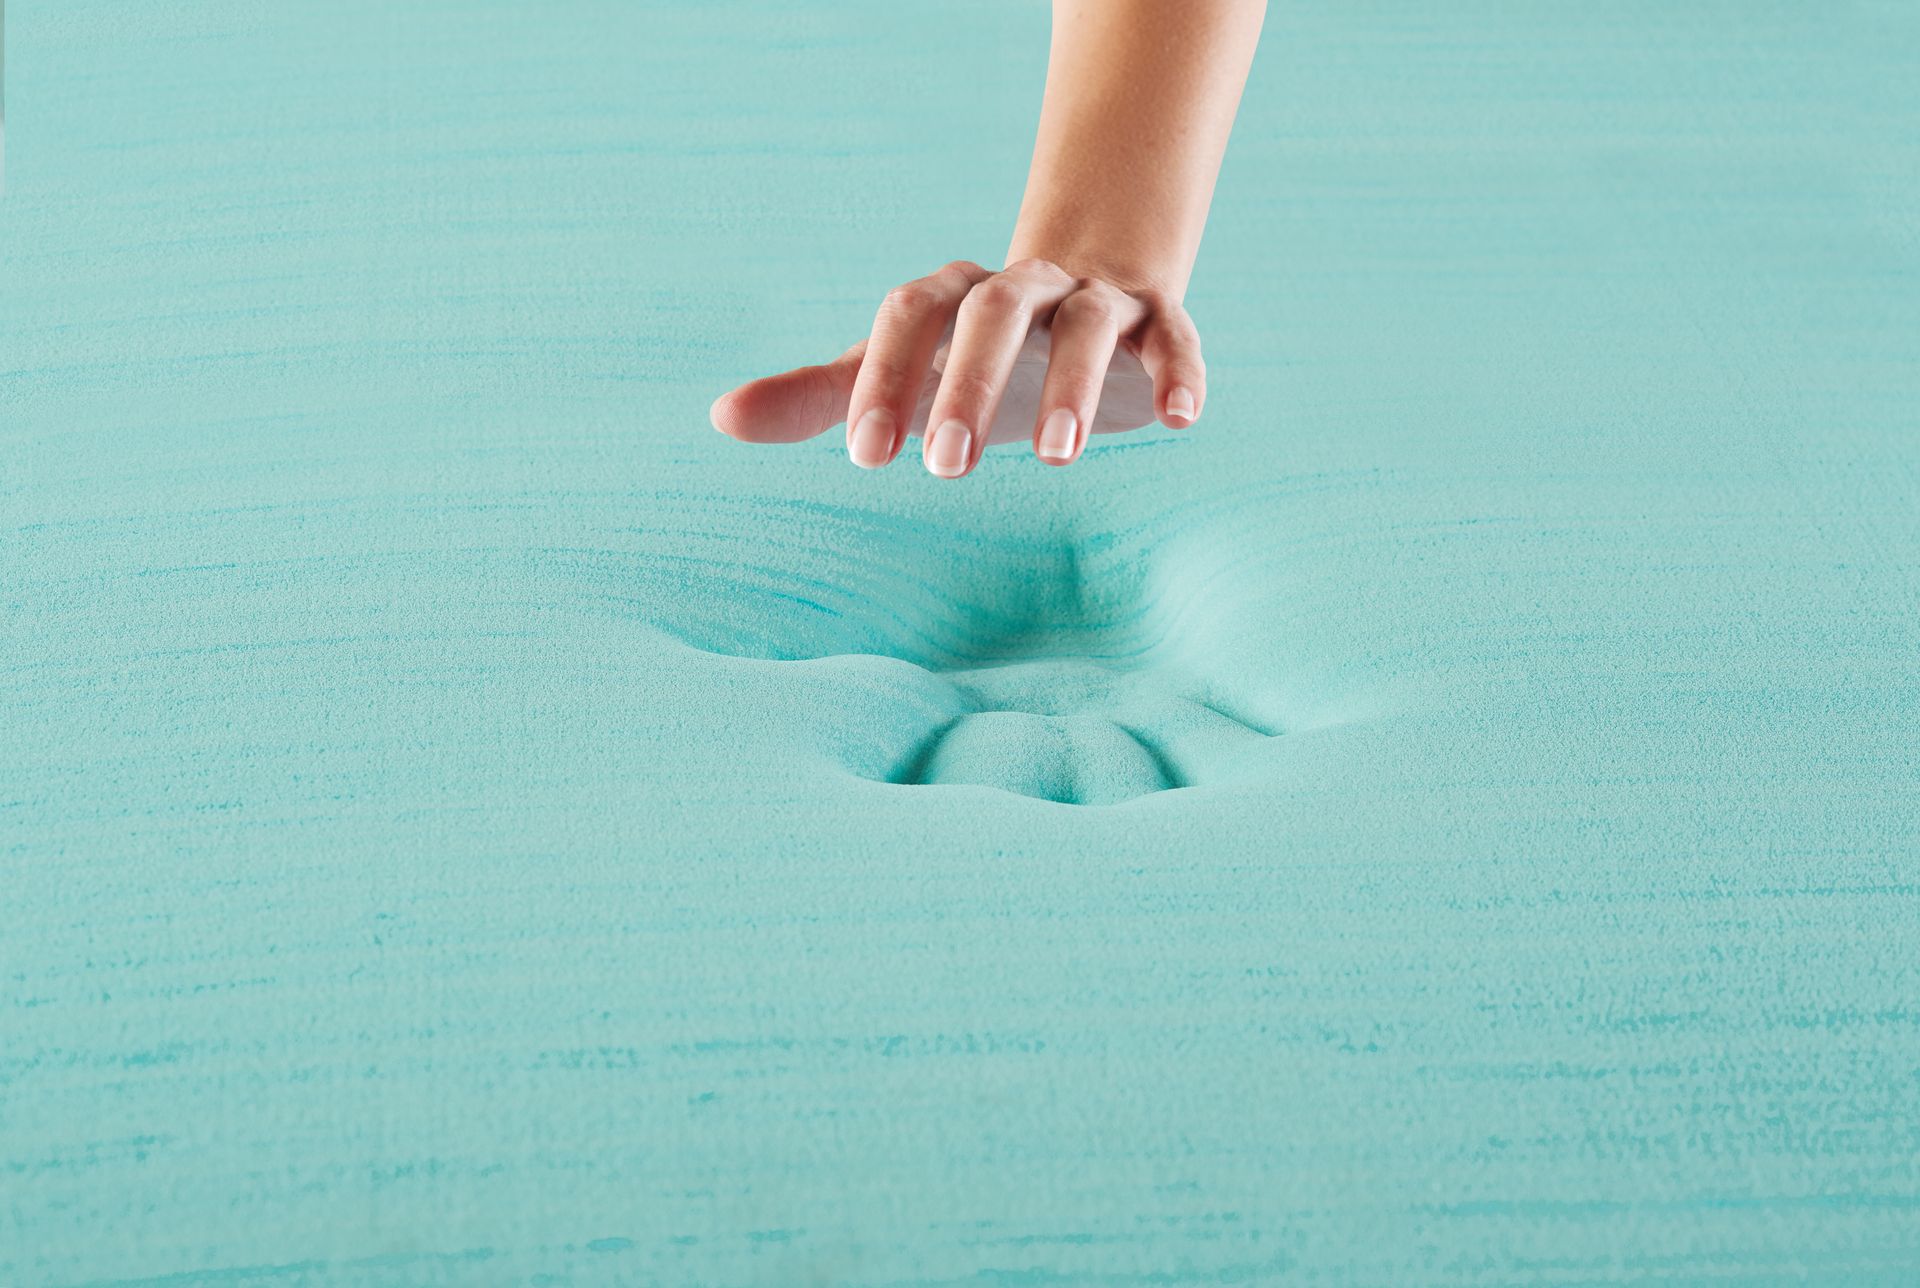 La mano de una persona alcanza un colchón de espuma azul.